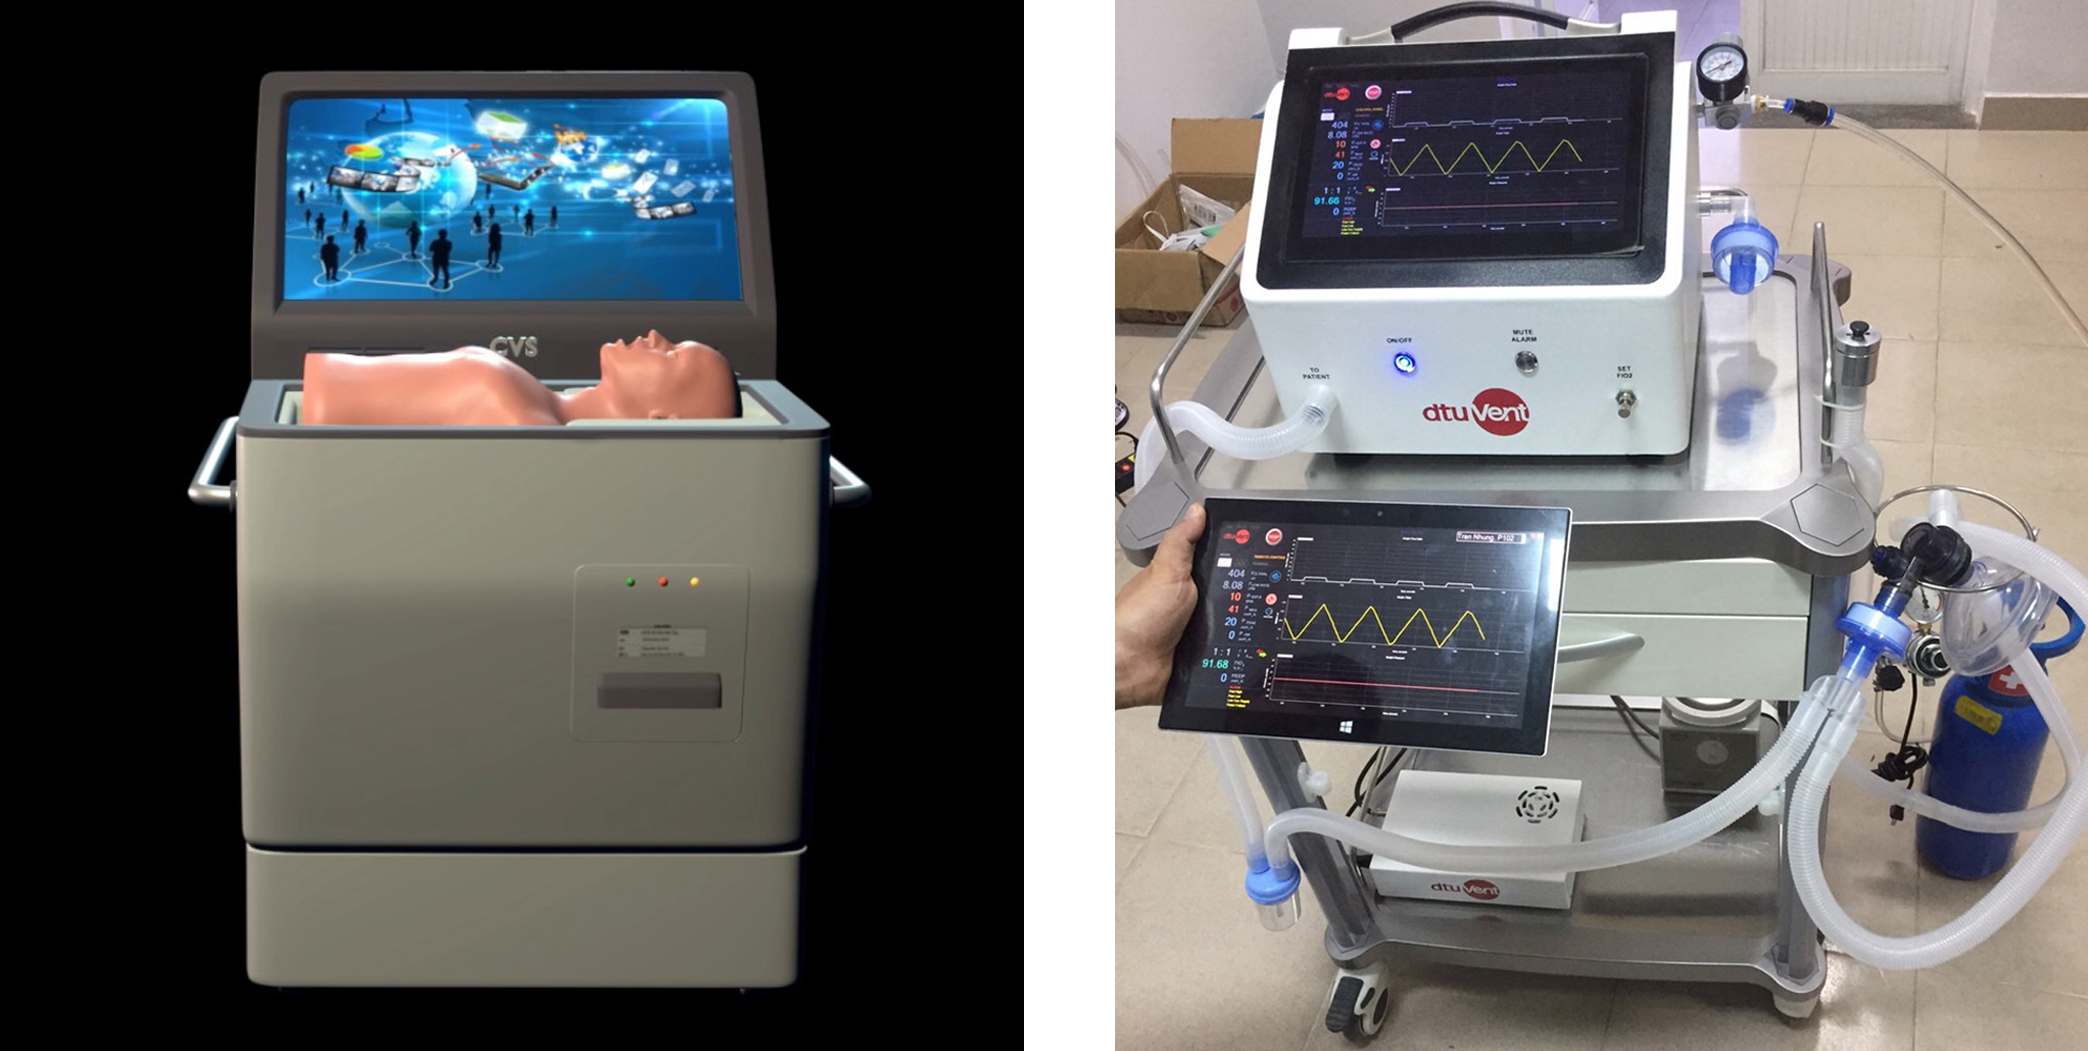 Sản phẩm eCPR - Hệ thống huấn luyện kỹ năng sơ cấp cứu hồi sức tim, phổi vì cộng đồng và máy thở “2 trong 1” dtu-VENT Ver2.0 Máy thở “2 trong 1” dtu-VENT Ver2.0